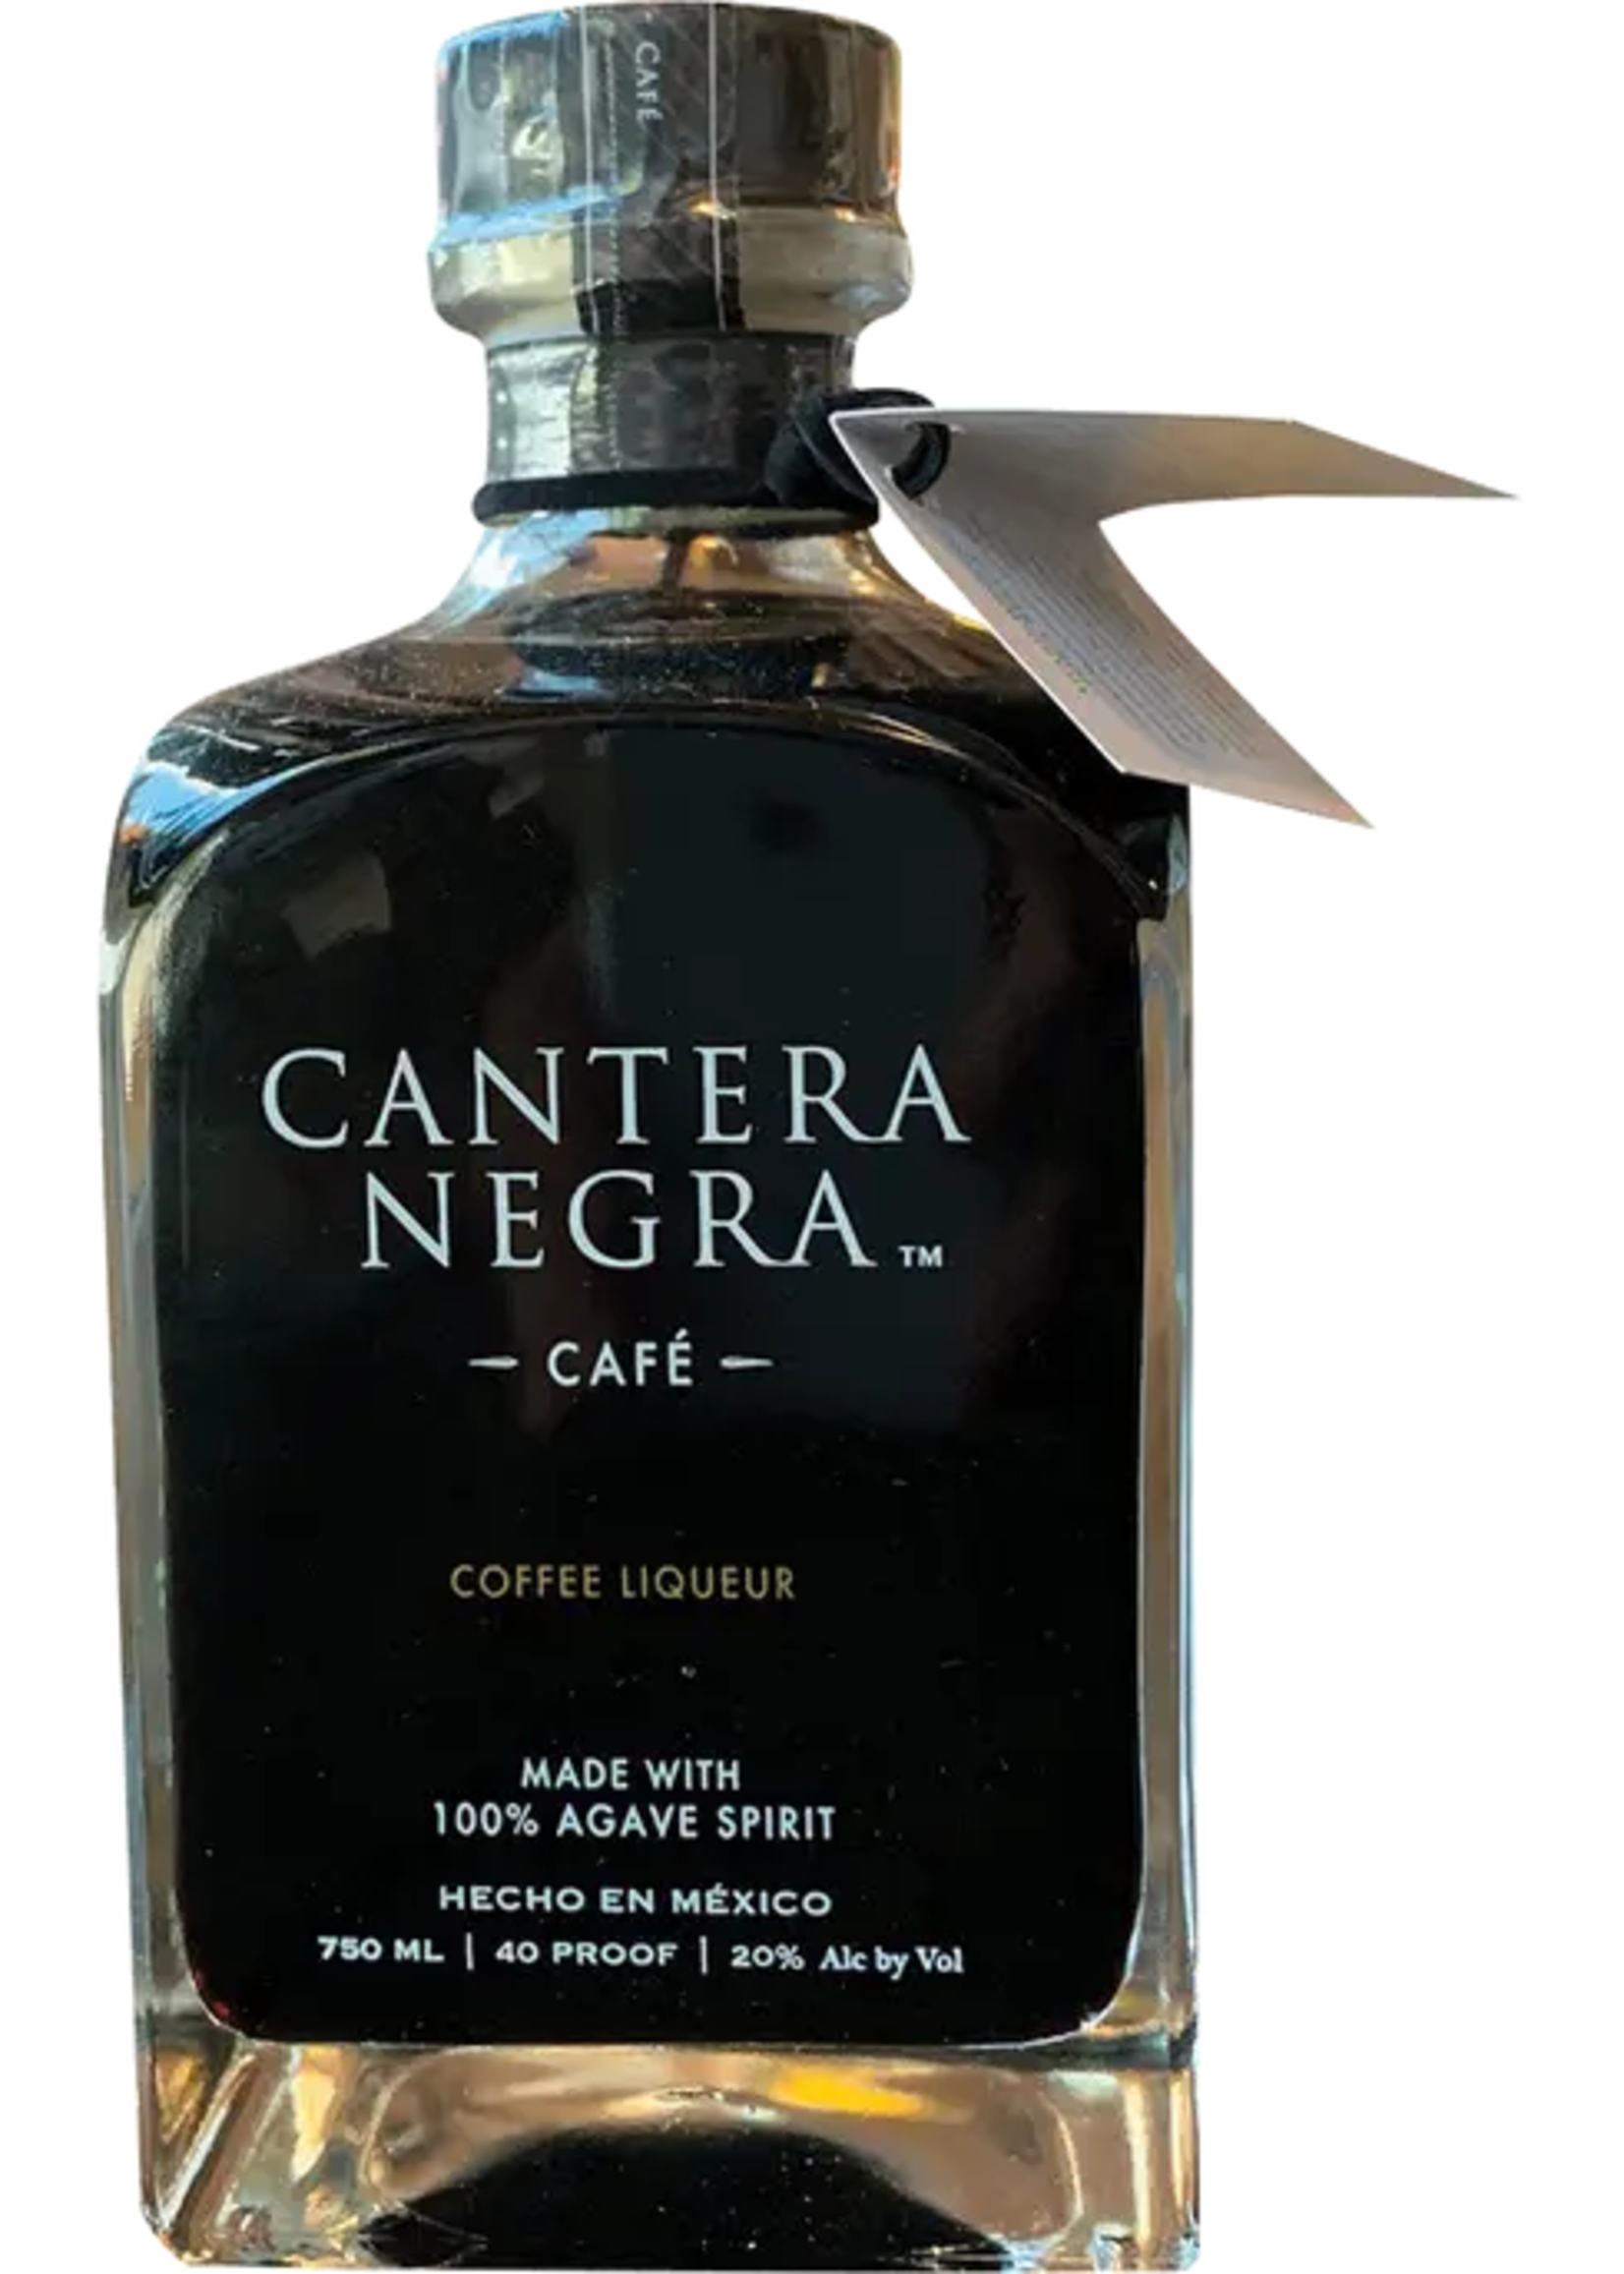 CANTERA NEGRA CAFE COFFEE LIQUEUR 40PF 750 ML